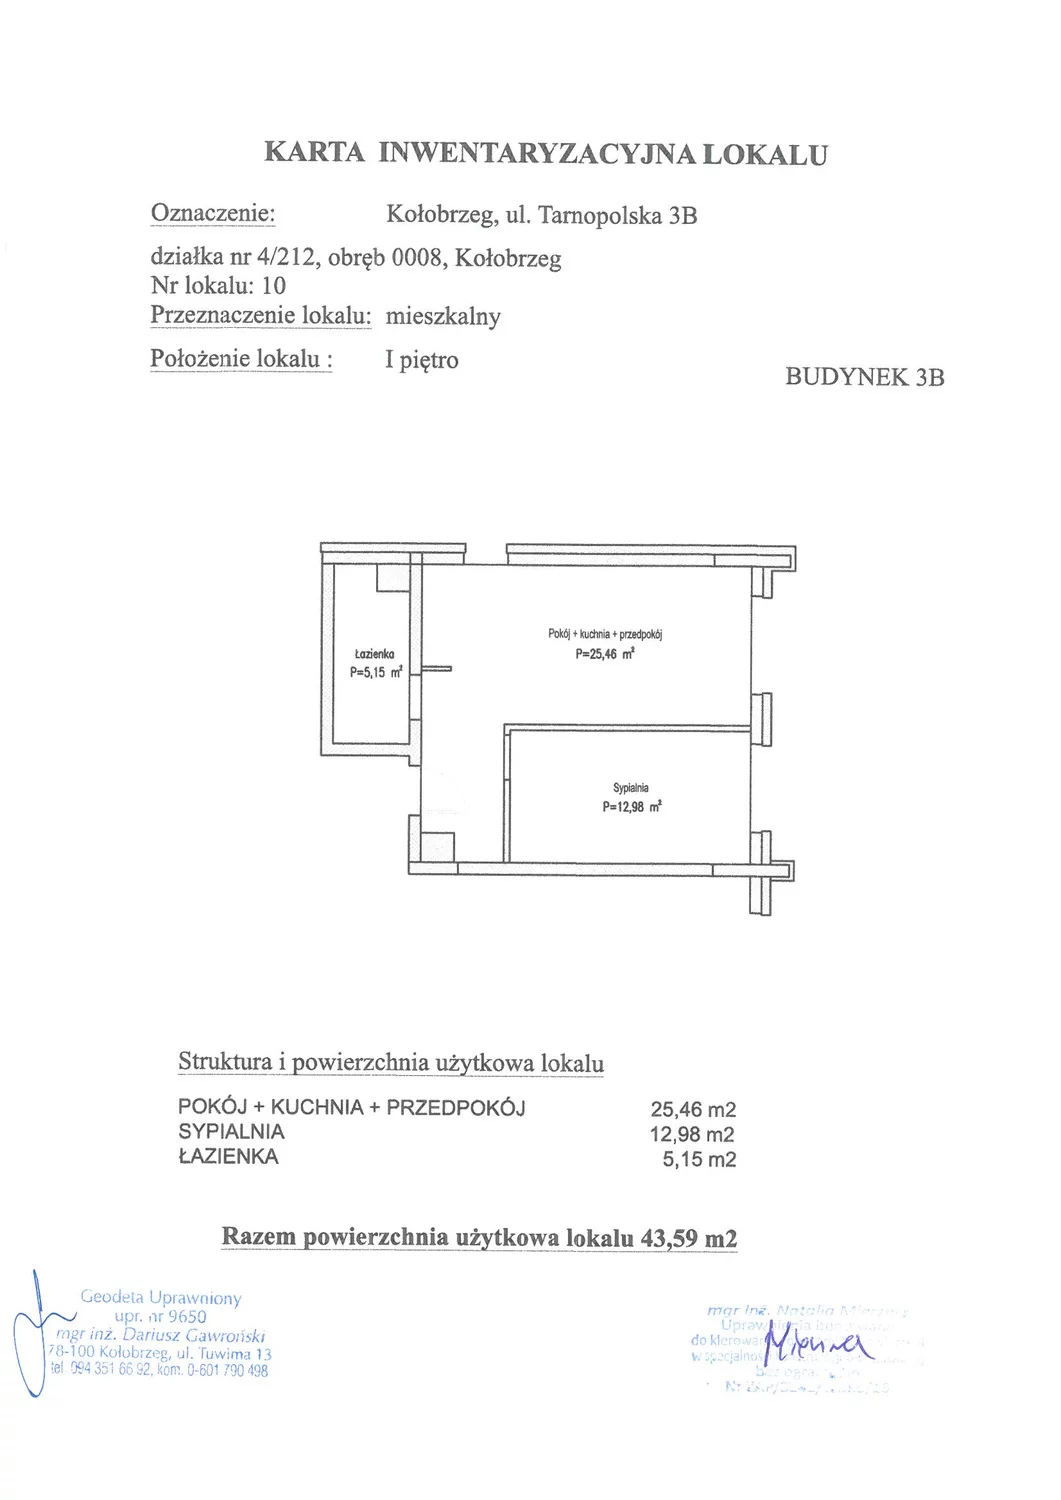 Apartament 43,59 m², piętro 1, oferta nr B10, Miejski Las, Kołobrzeg, Podczele, ul. Tarnopolska 3 A, B, C